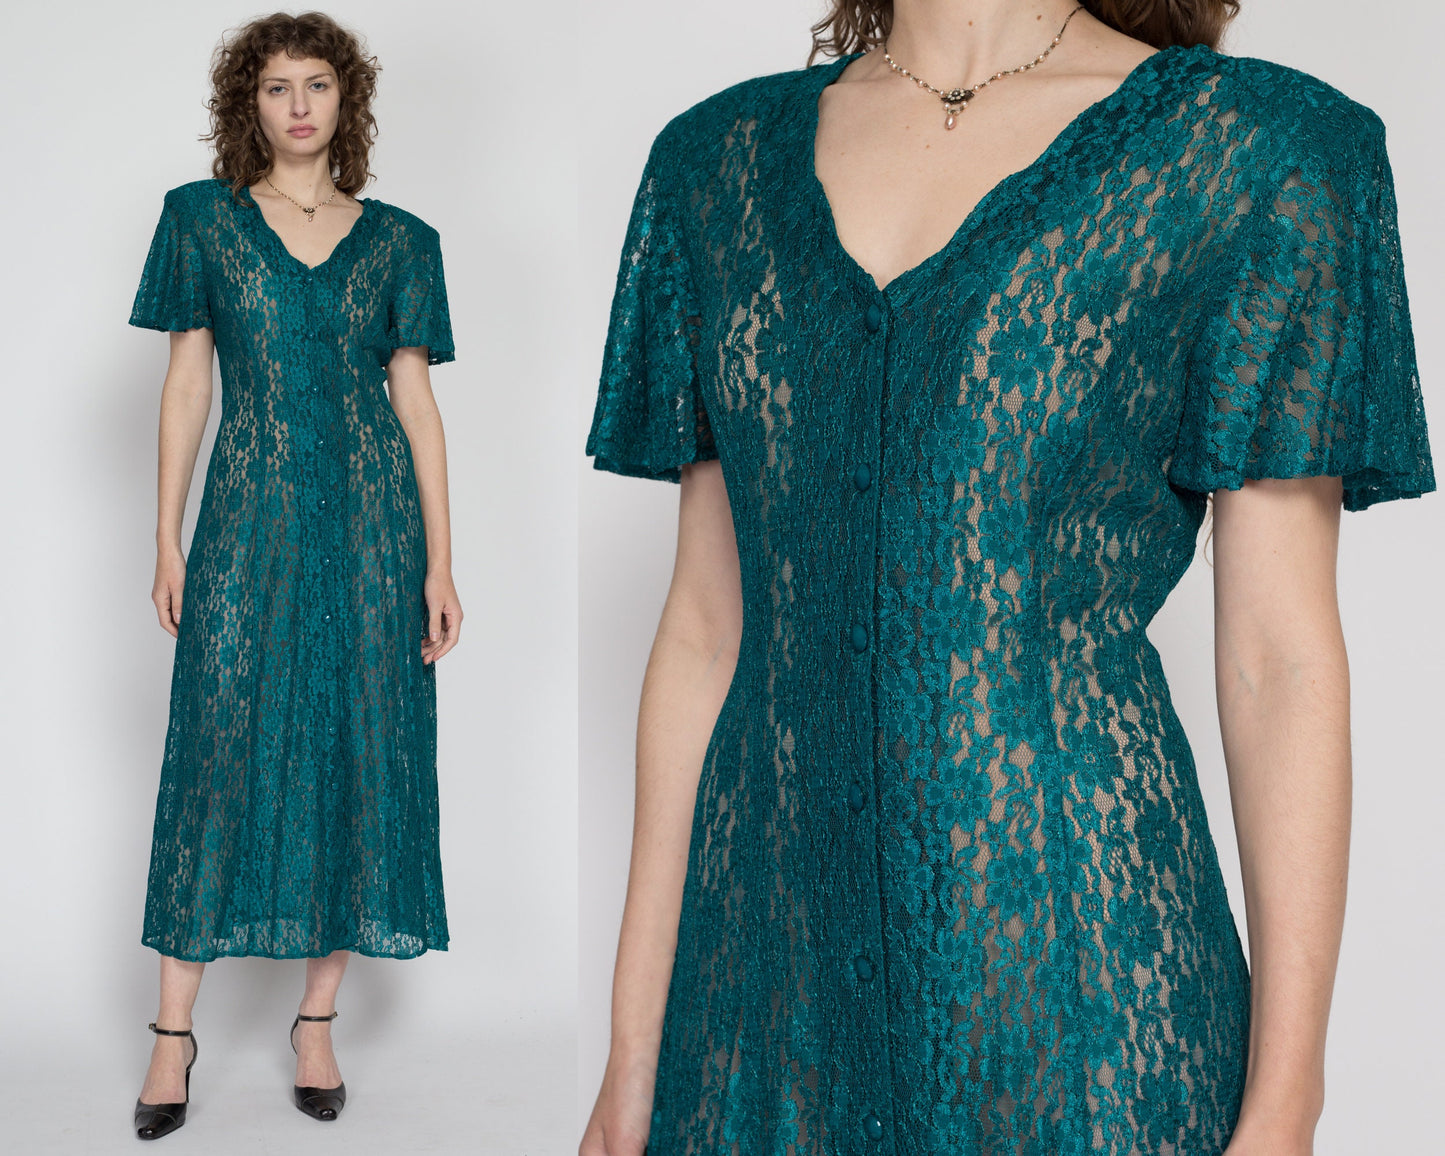 Medium 90s Emerald Green Sheer Lace Maxi Dress | Vintage Flutter Sleeve Button Up Boho Grunge Sundress